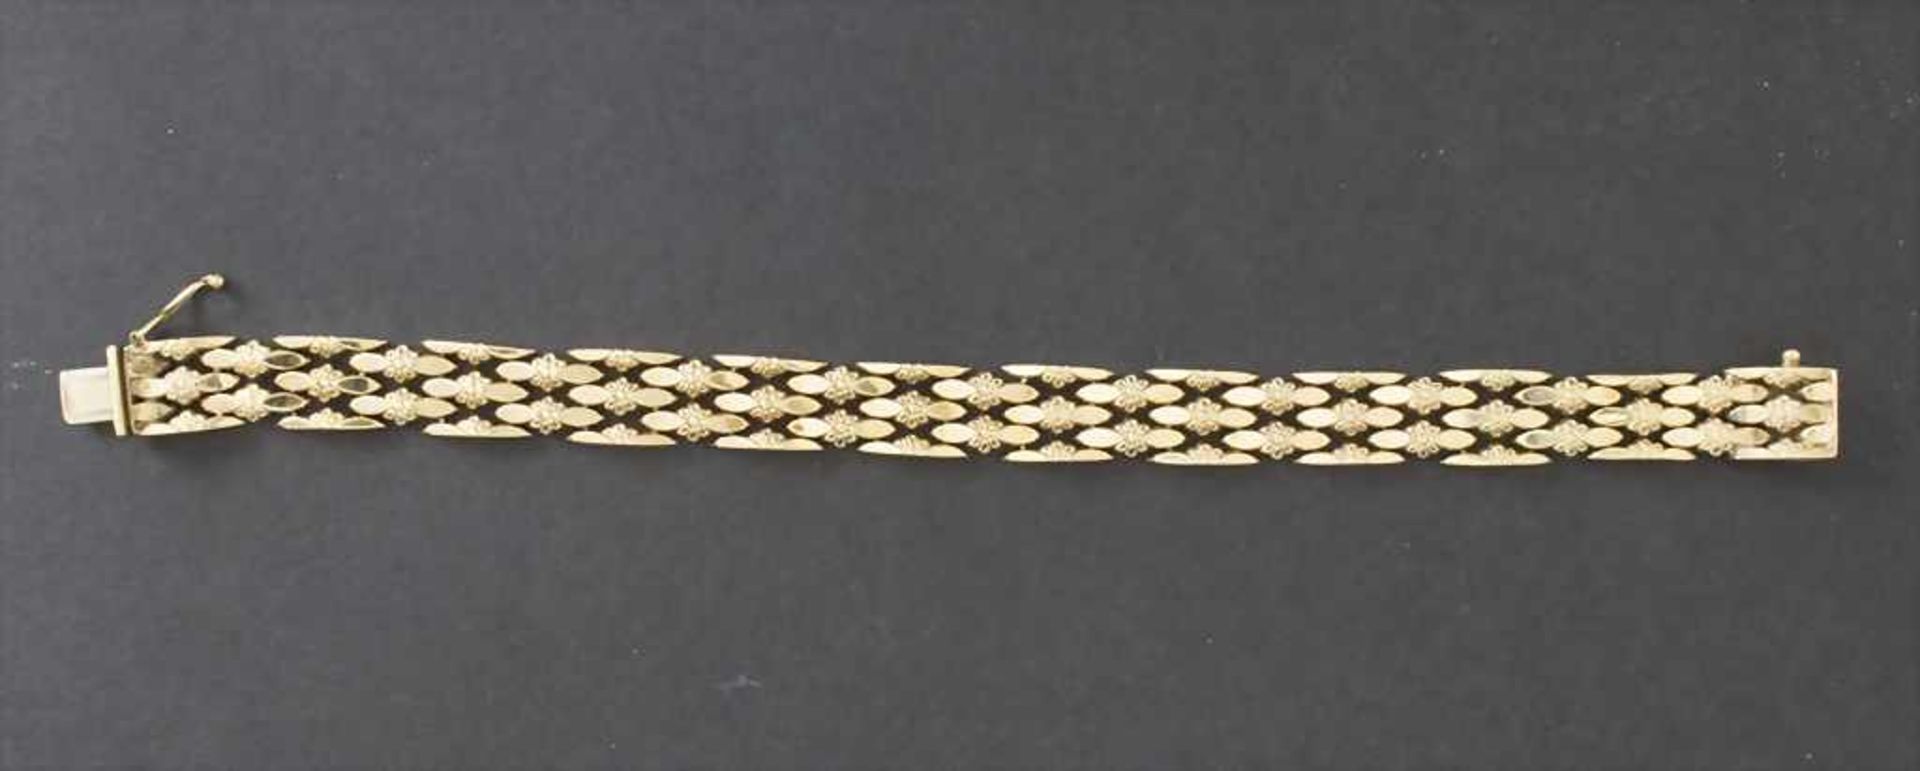 Damen Gliederarmband in Gold / A ladies bracelet in goldMaterial: Gelbgold 585/000 14 Kt gepunzt,